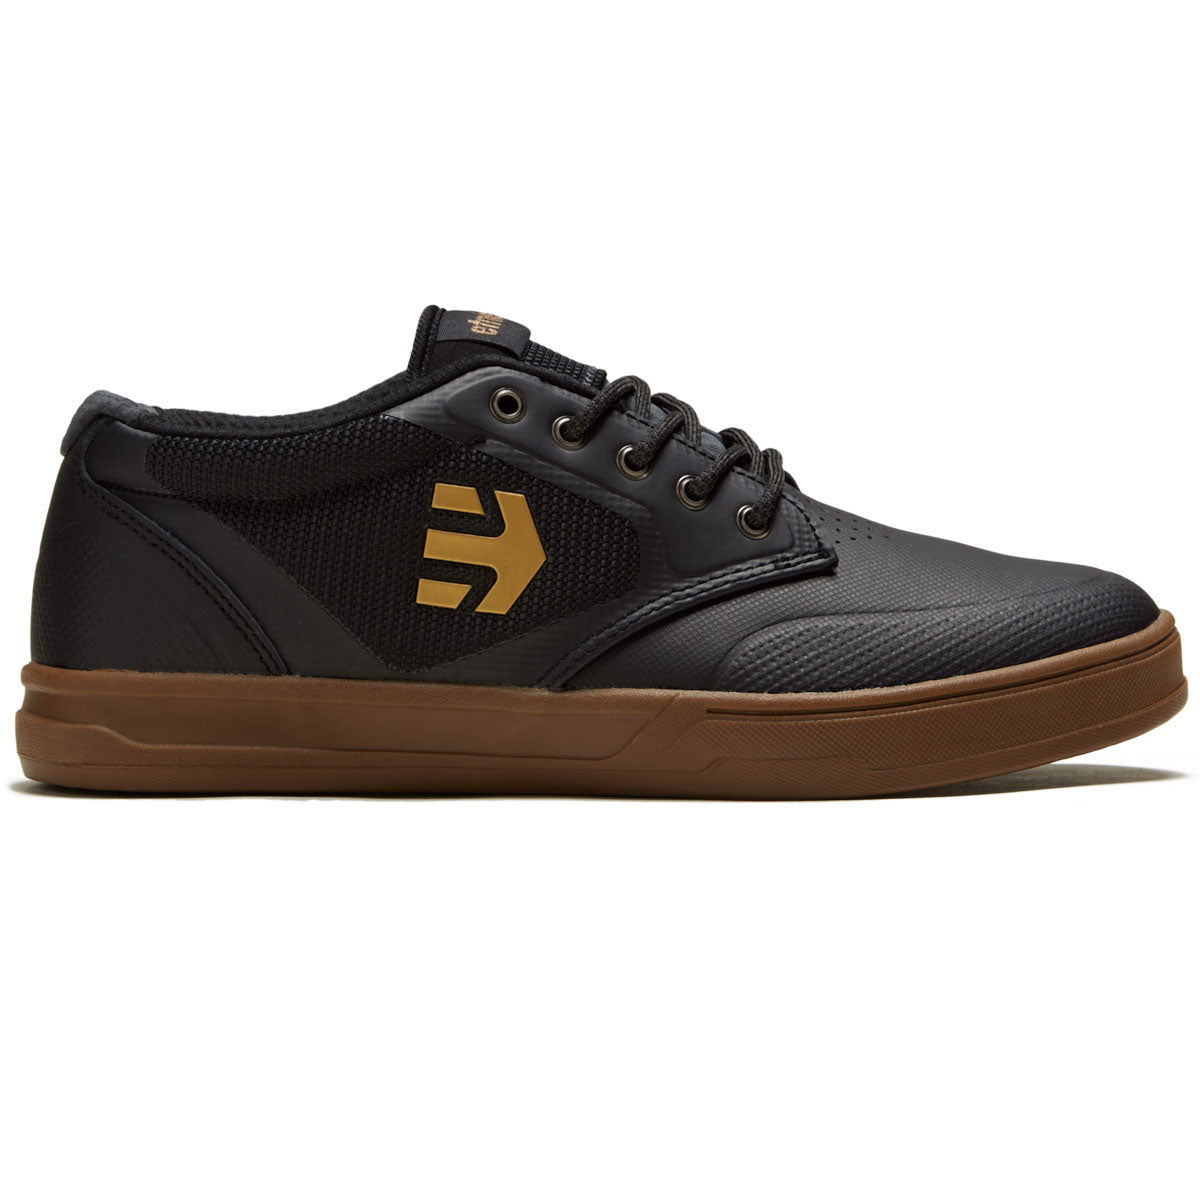 Etnies Semenuk Pro Shoes - Black/Gum image 1